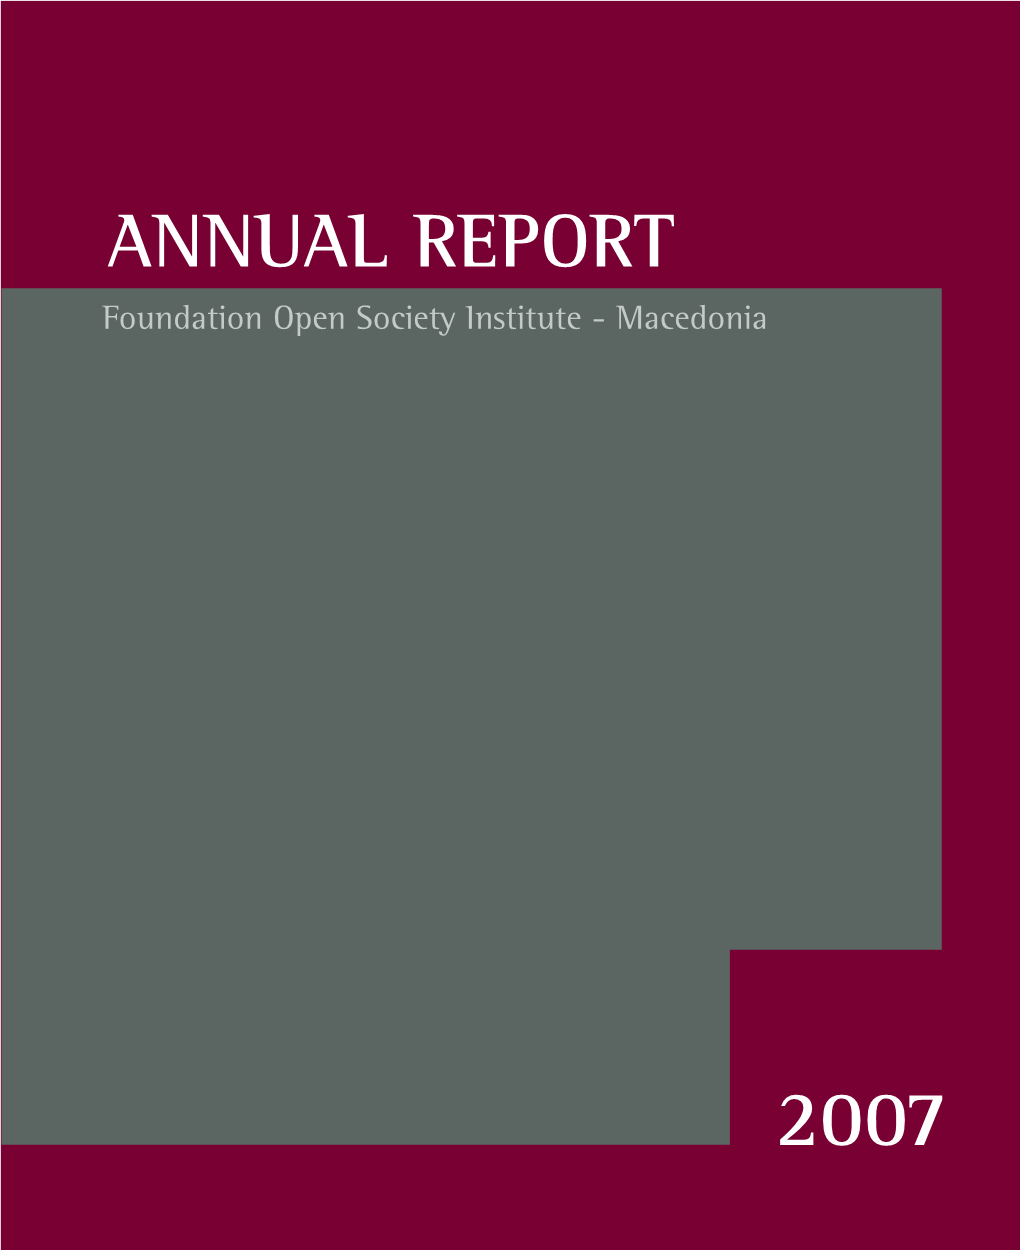 ANNUAL Report : 2007 / Foundation Open Society Institute - Macedonia ; [Editor Violeta Gligorovska]